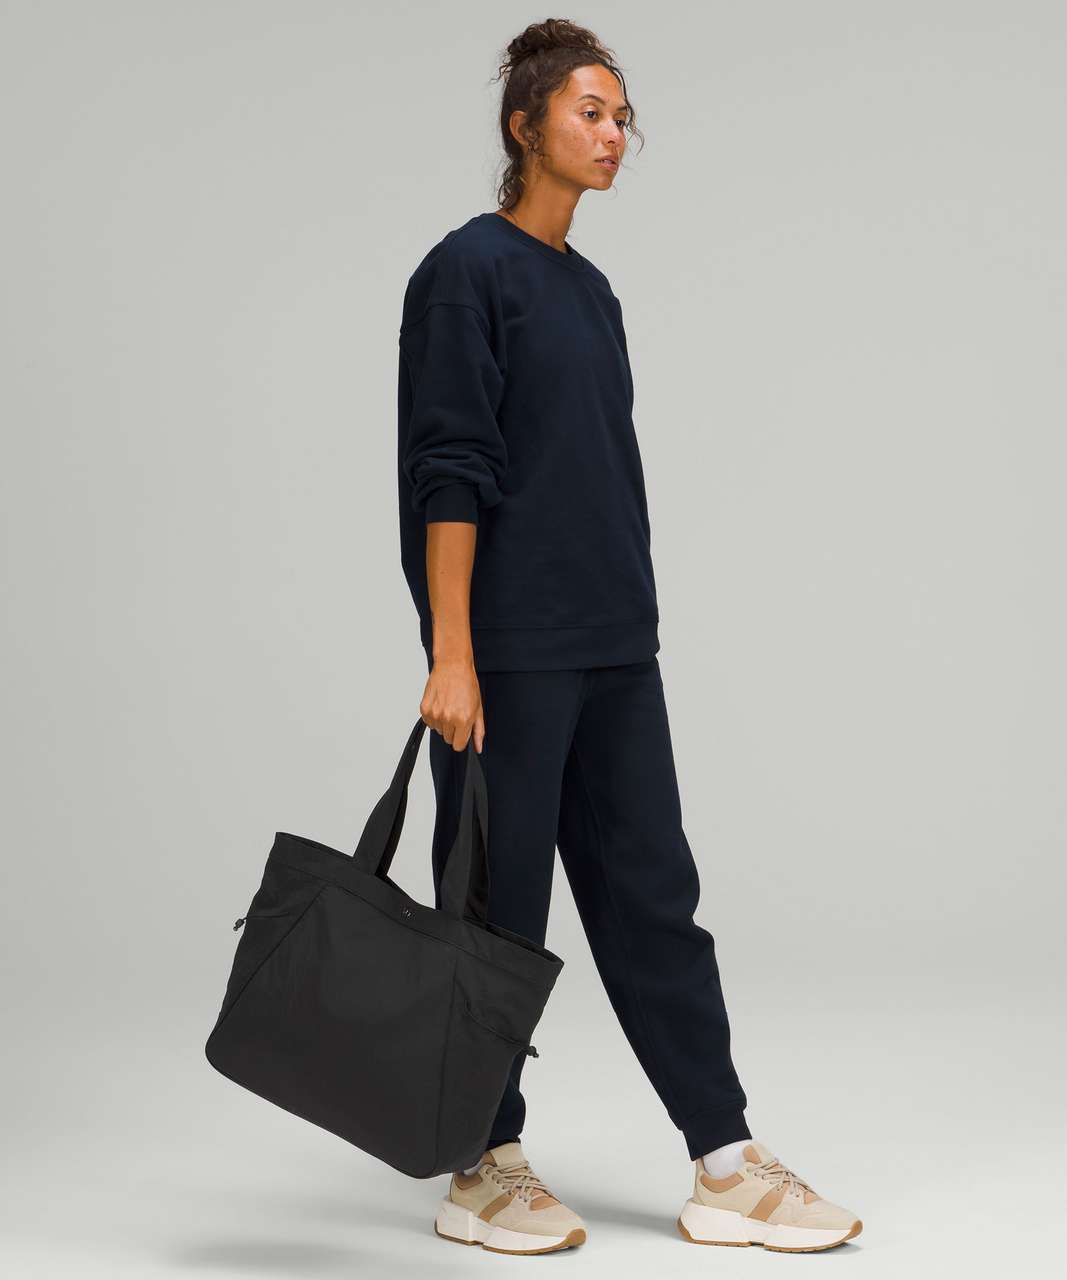 Lululemon Side-Cinch Shopper Bag 18L - Black